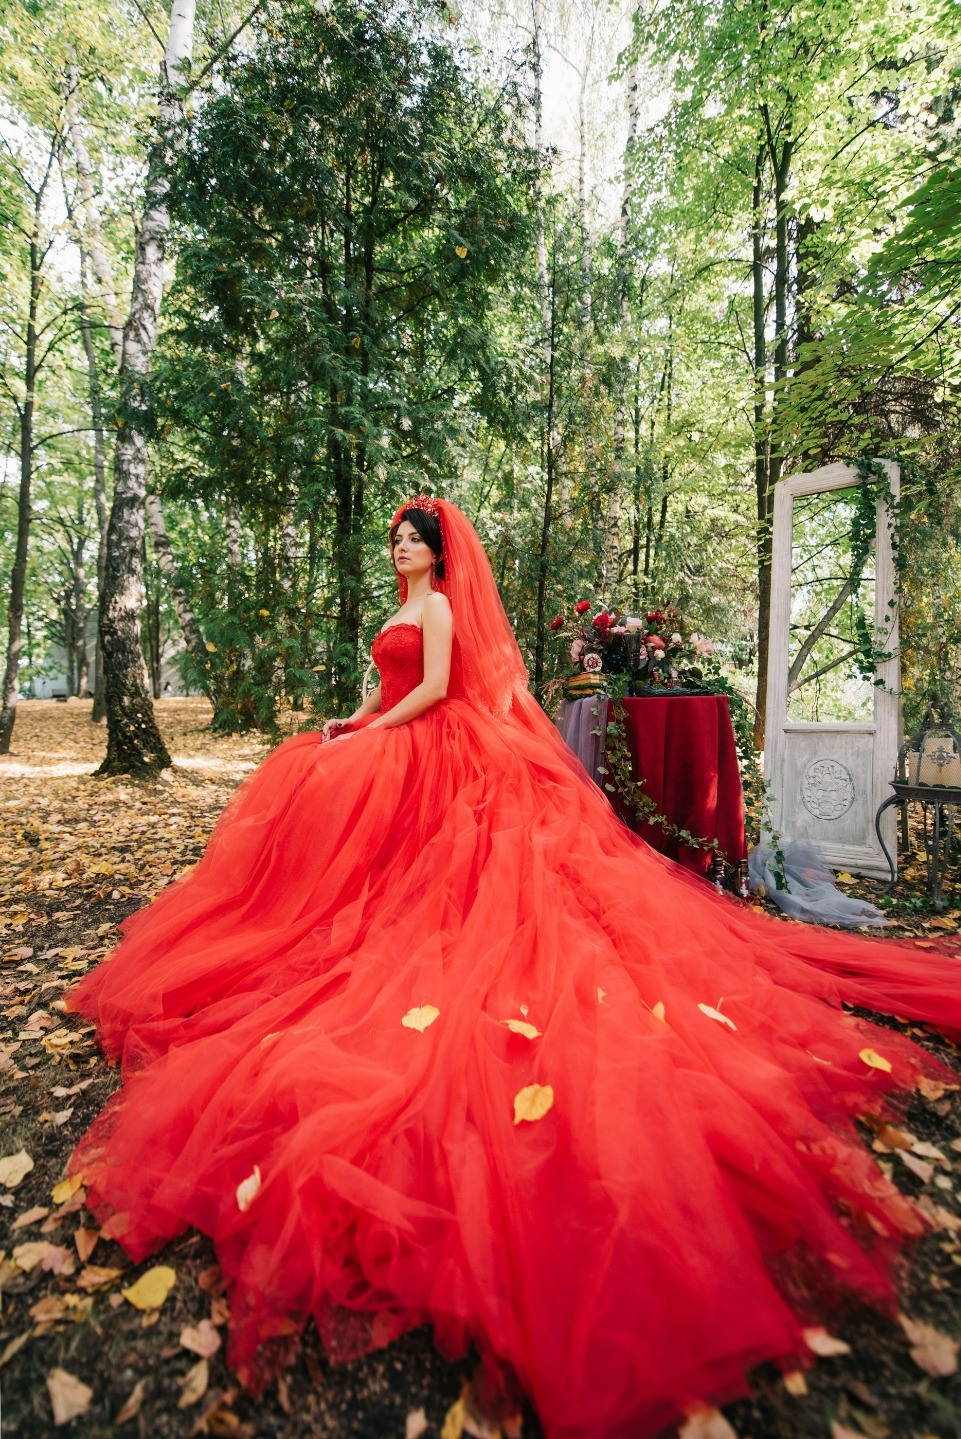 ФОТО ИЗ СТАТЬИ: В зачарованном лесу: волшебная свадьба как из сказки